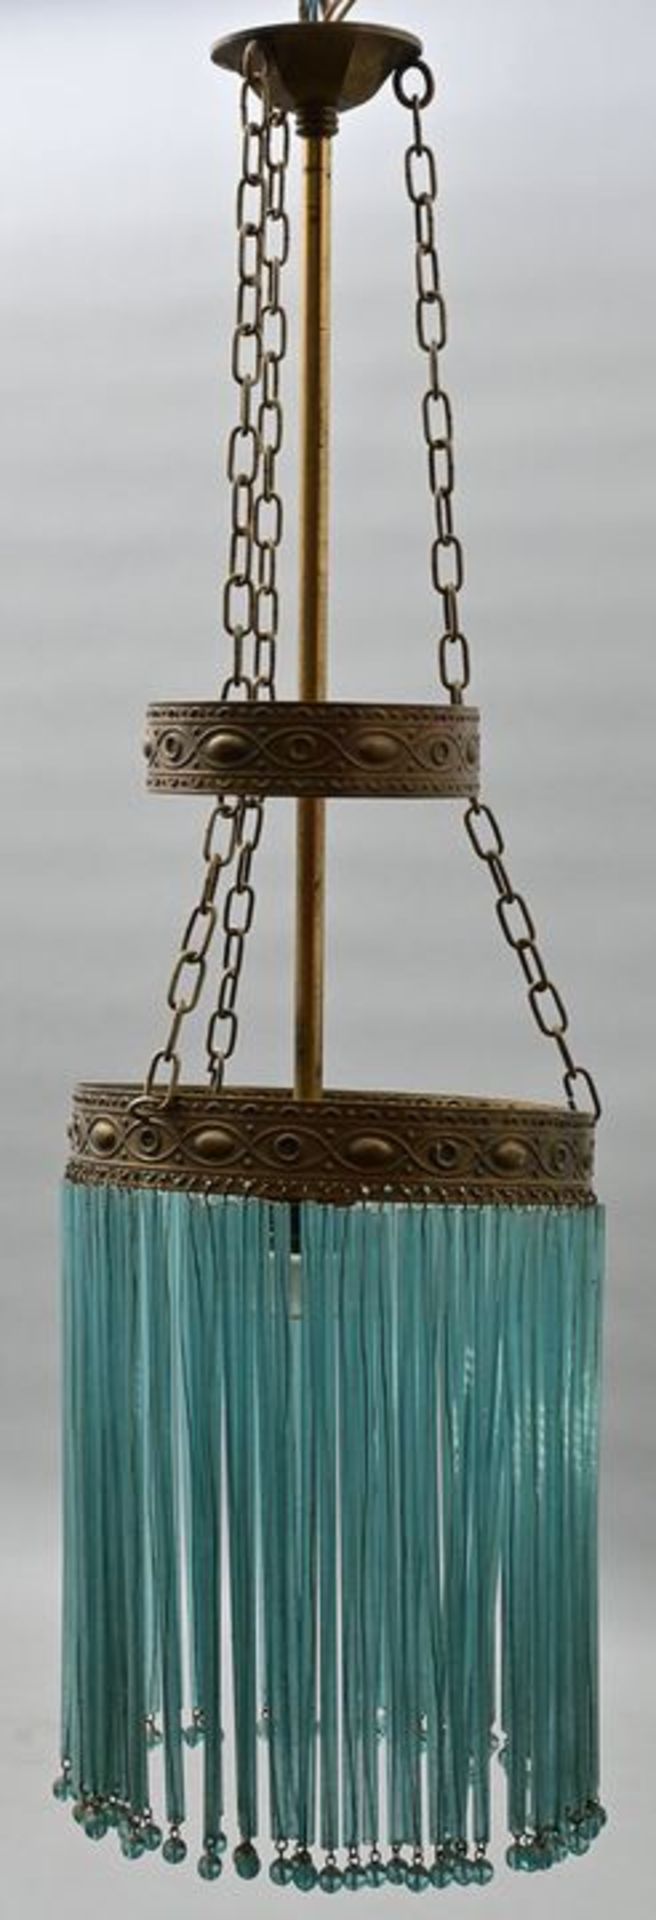 Deckenlampe im Jugendstil / Ceiling lamp in art nouveau style